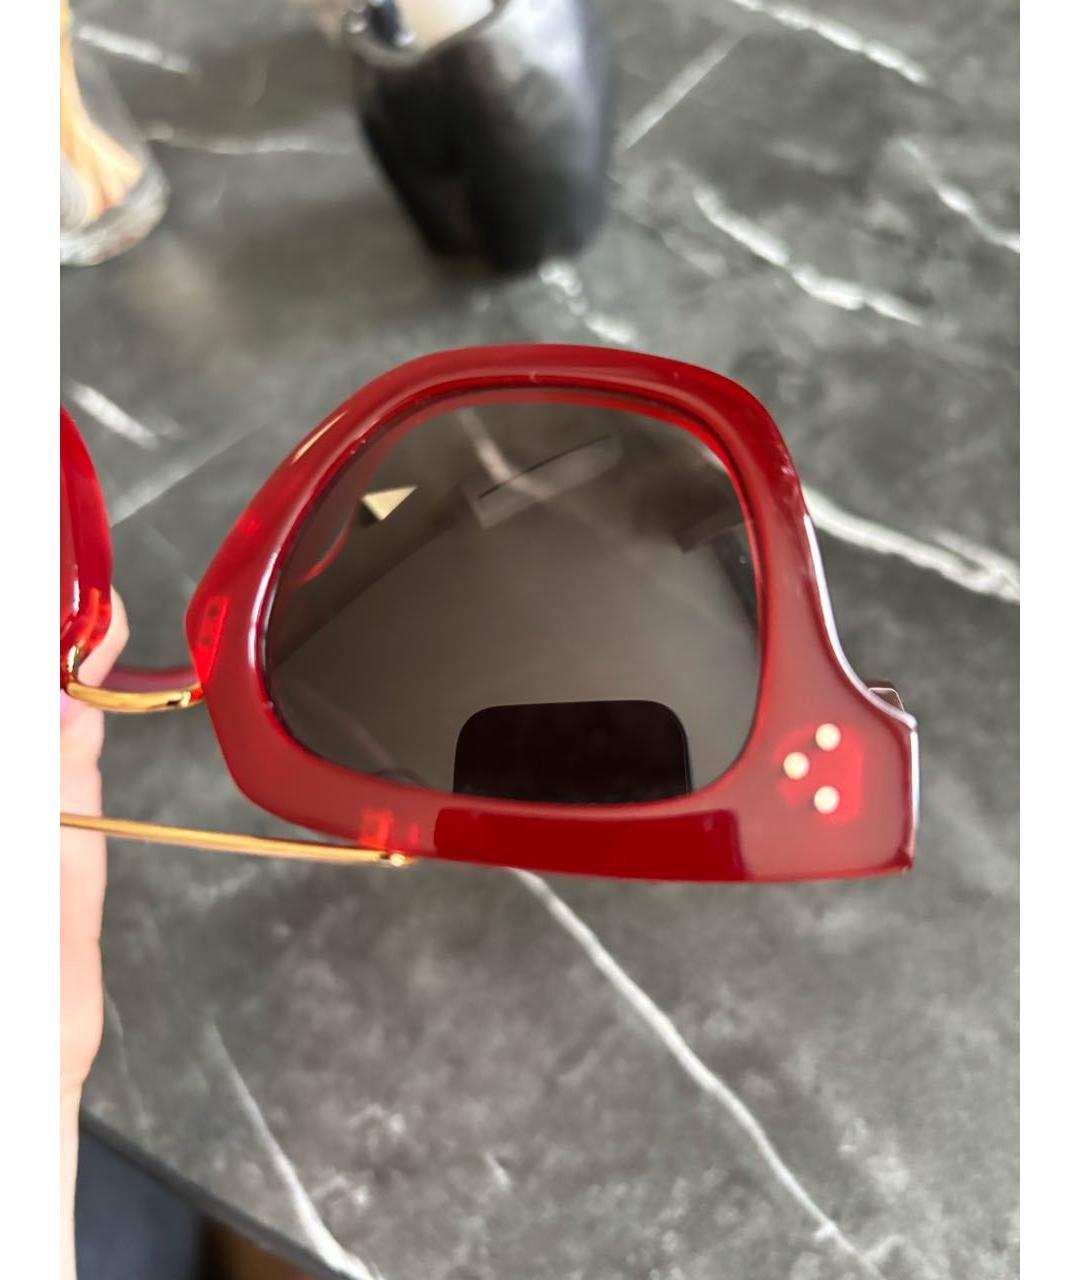 CELINE PRE-OWNED Красные пластиковые солнцезащитные очки, фото 4